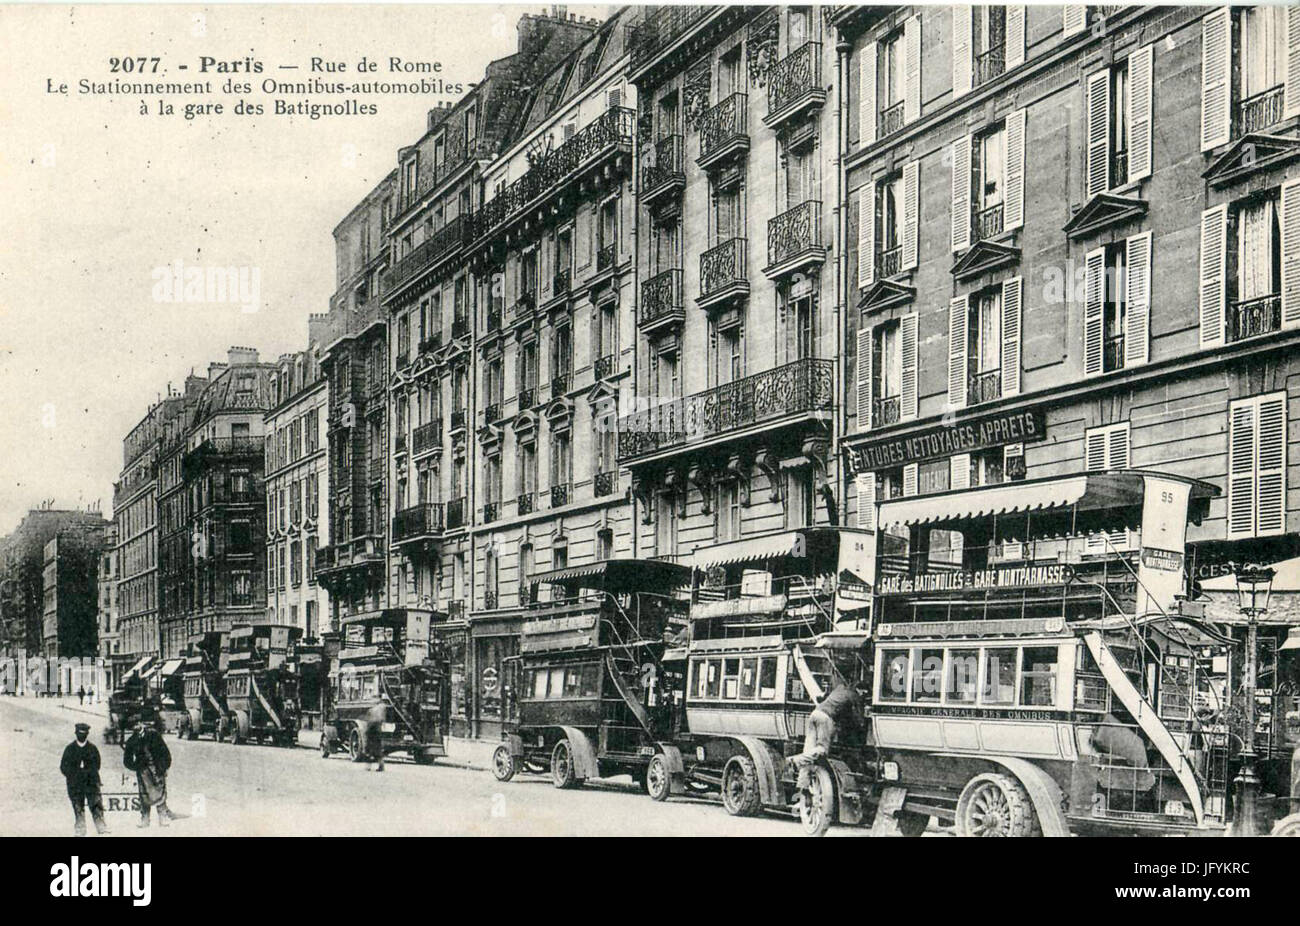 FF 2077 - PARIS - Rue de Rome - Le stationnement des Omnibus-automobiles à la gare des Batignolles Stock Photo